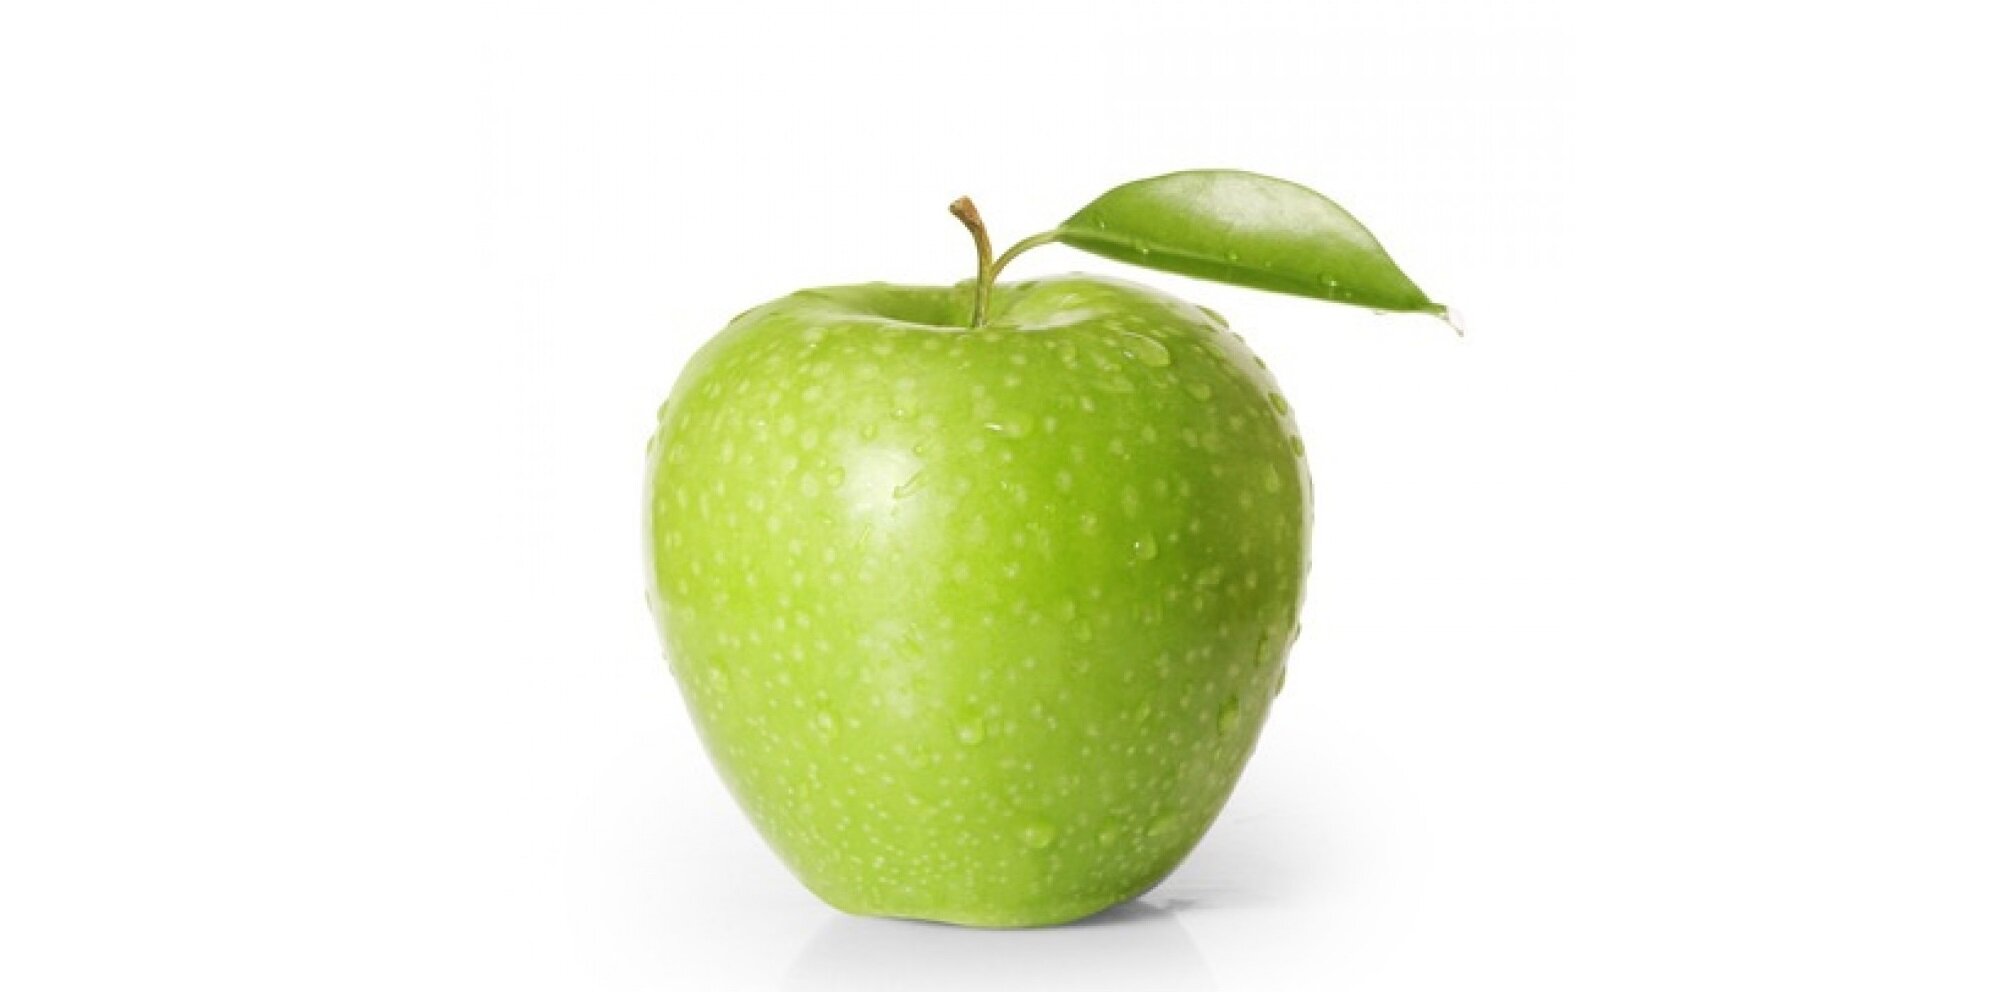 Η Apple επιχειρεί να κατοχυρώσει πνευματικά δικαιώματα για εικόνες που απεικονίζουν… ποικιλίες μήλων!